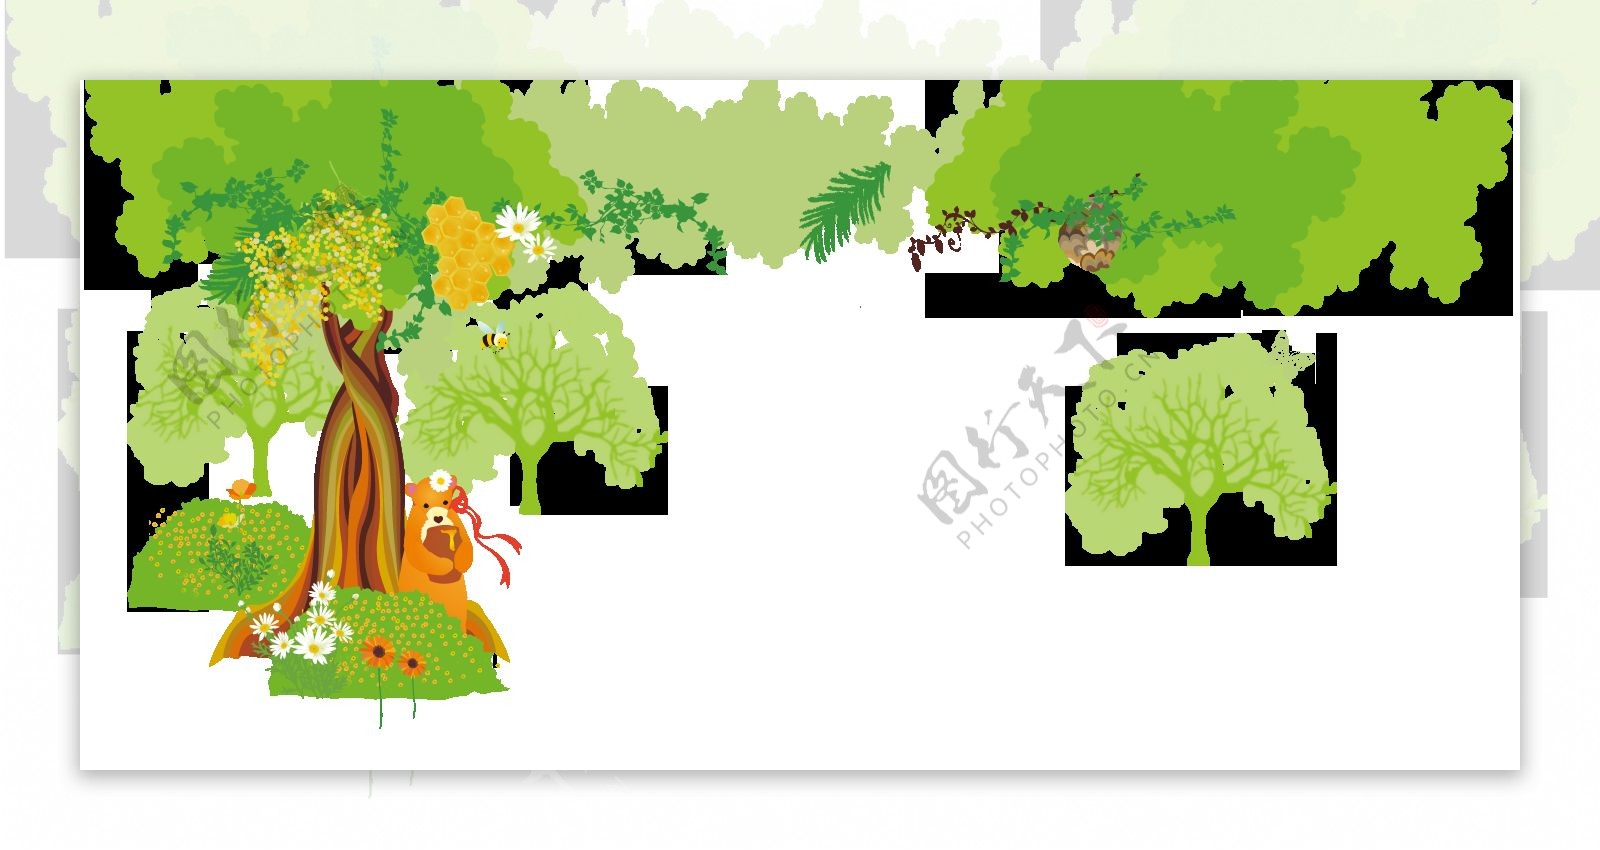 卡通绿色森林可爱熊抱蜂蜜罐png元素